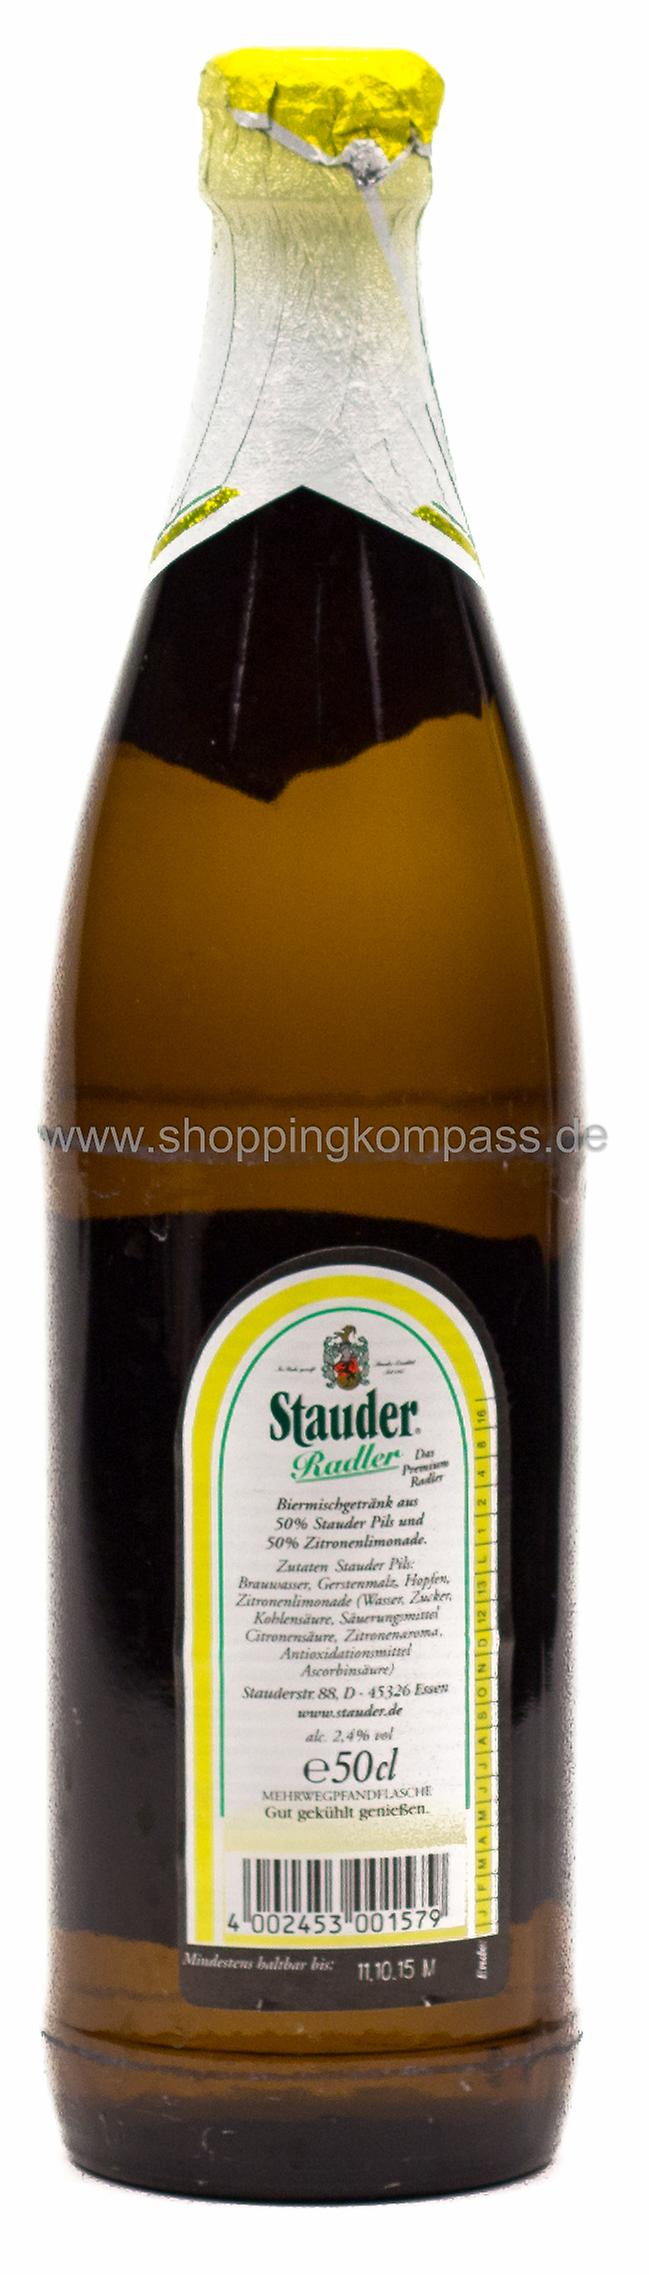 Stauder Radler 0,5 l Glas Mehrweg